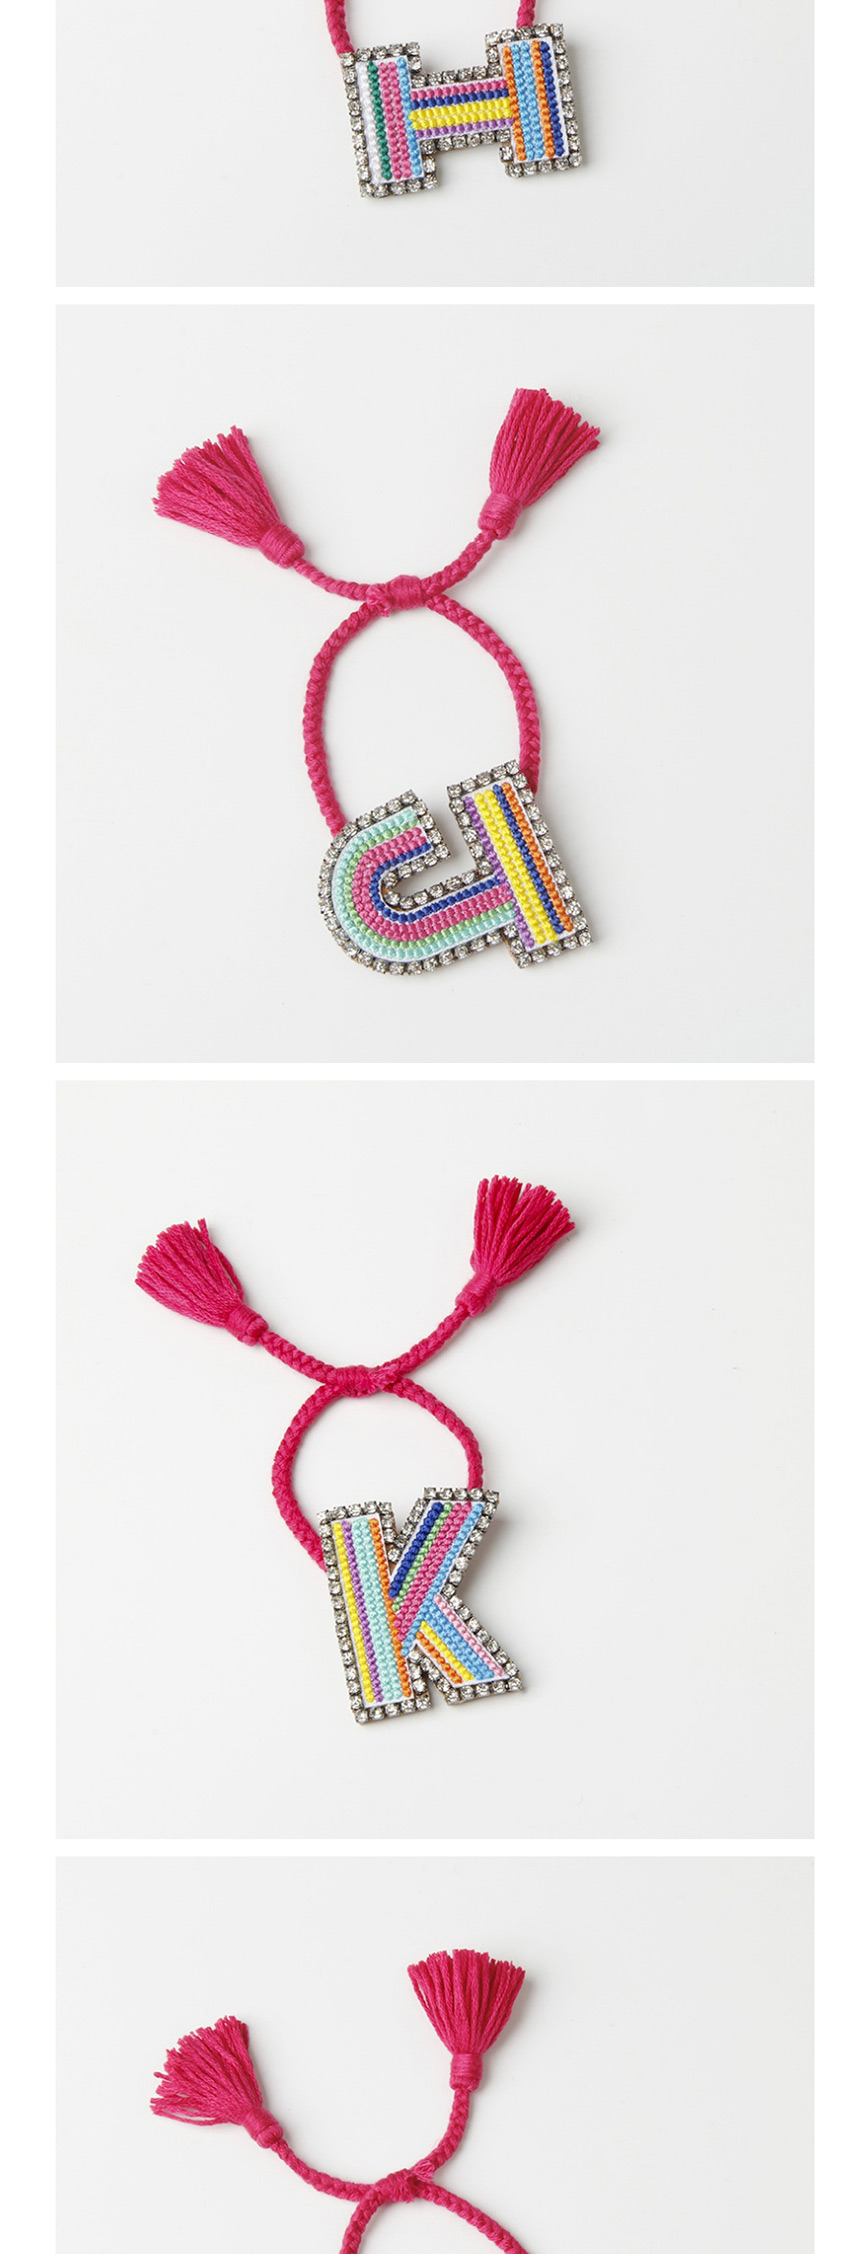 Fashion G Color Embroidered Woven Adjustable Crystal Alphabet Bracelet,Fashion Bracelets